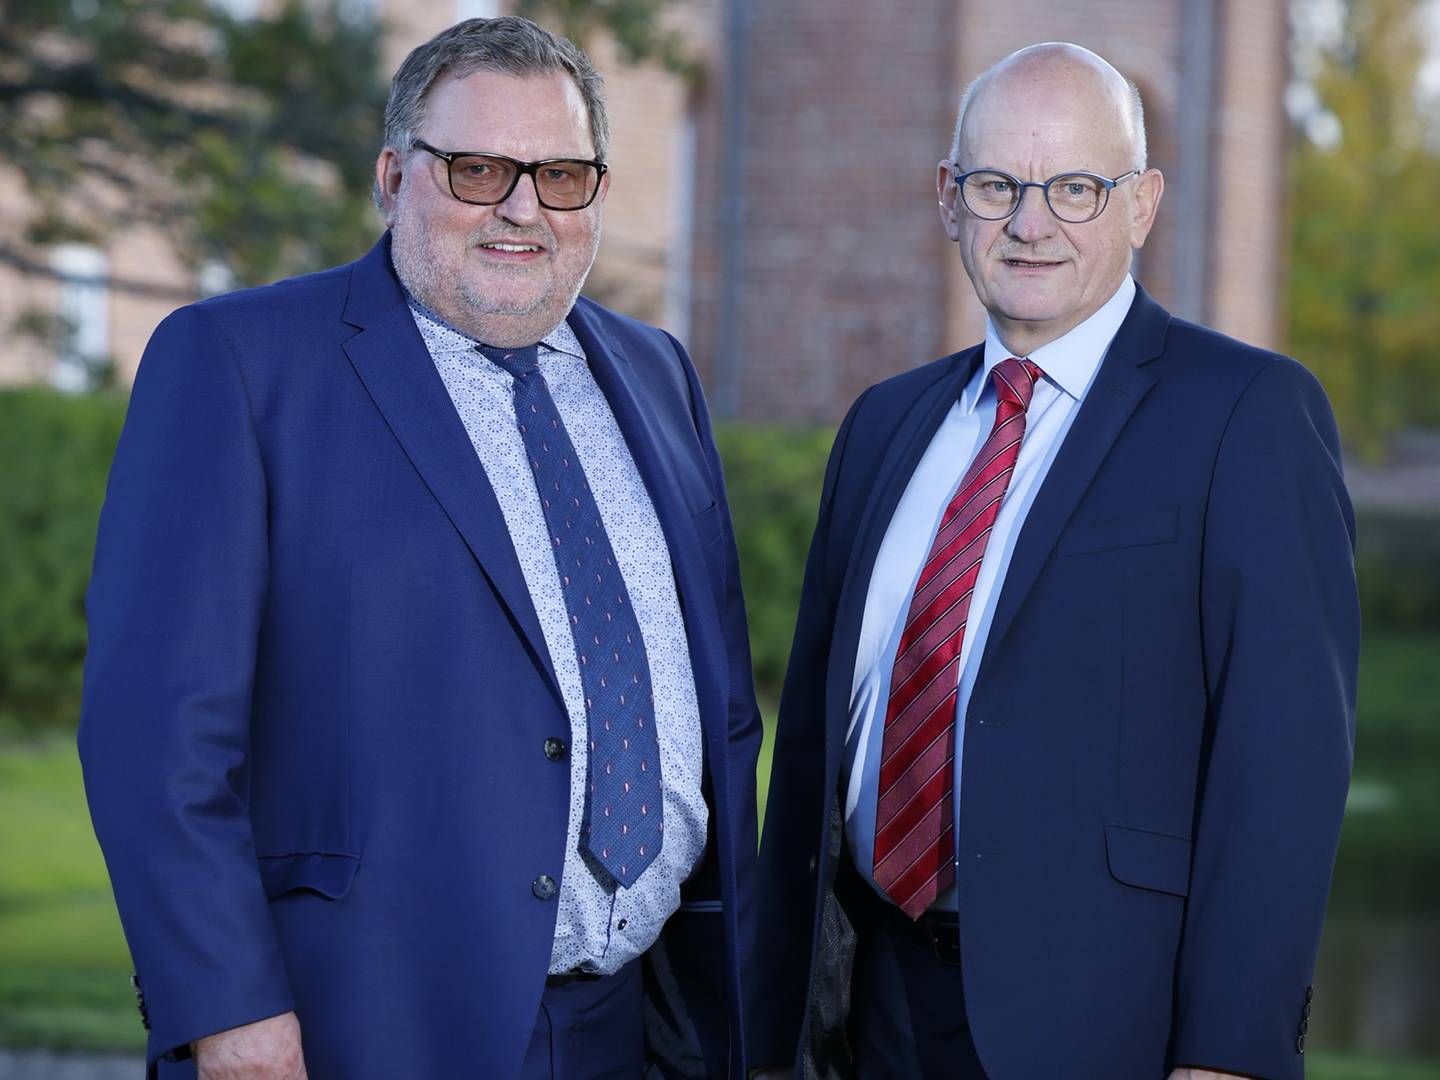 De to adm. direktører, Per Sønderup og Vagn Hansen kan glæde sig over at stå i spidsen for Danmarks ottendestørste pengeinstitut. | Foto: PR/Sparekassen Danmark